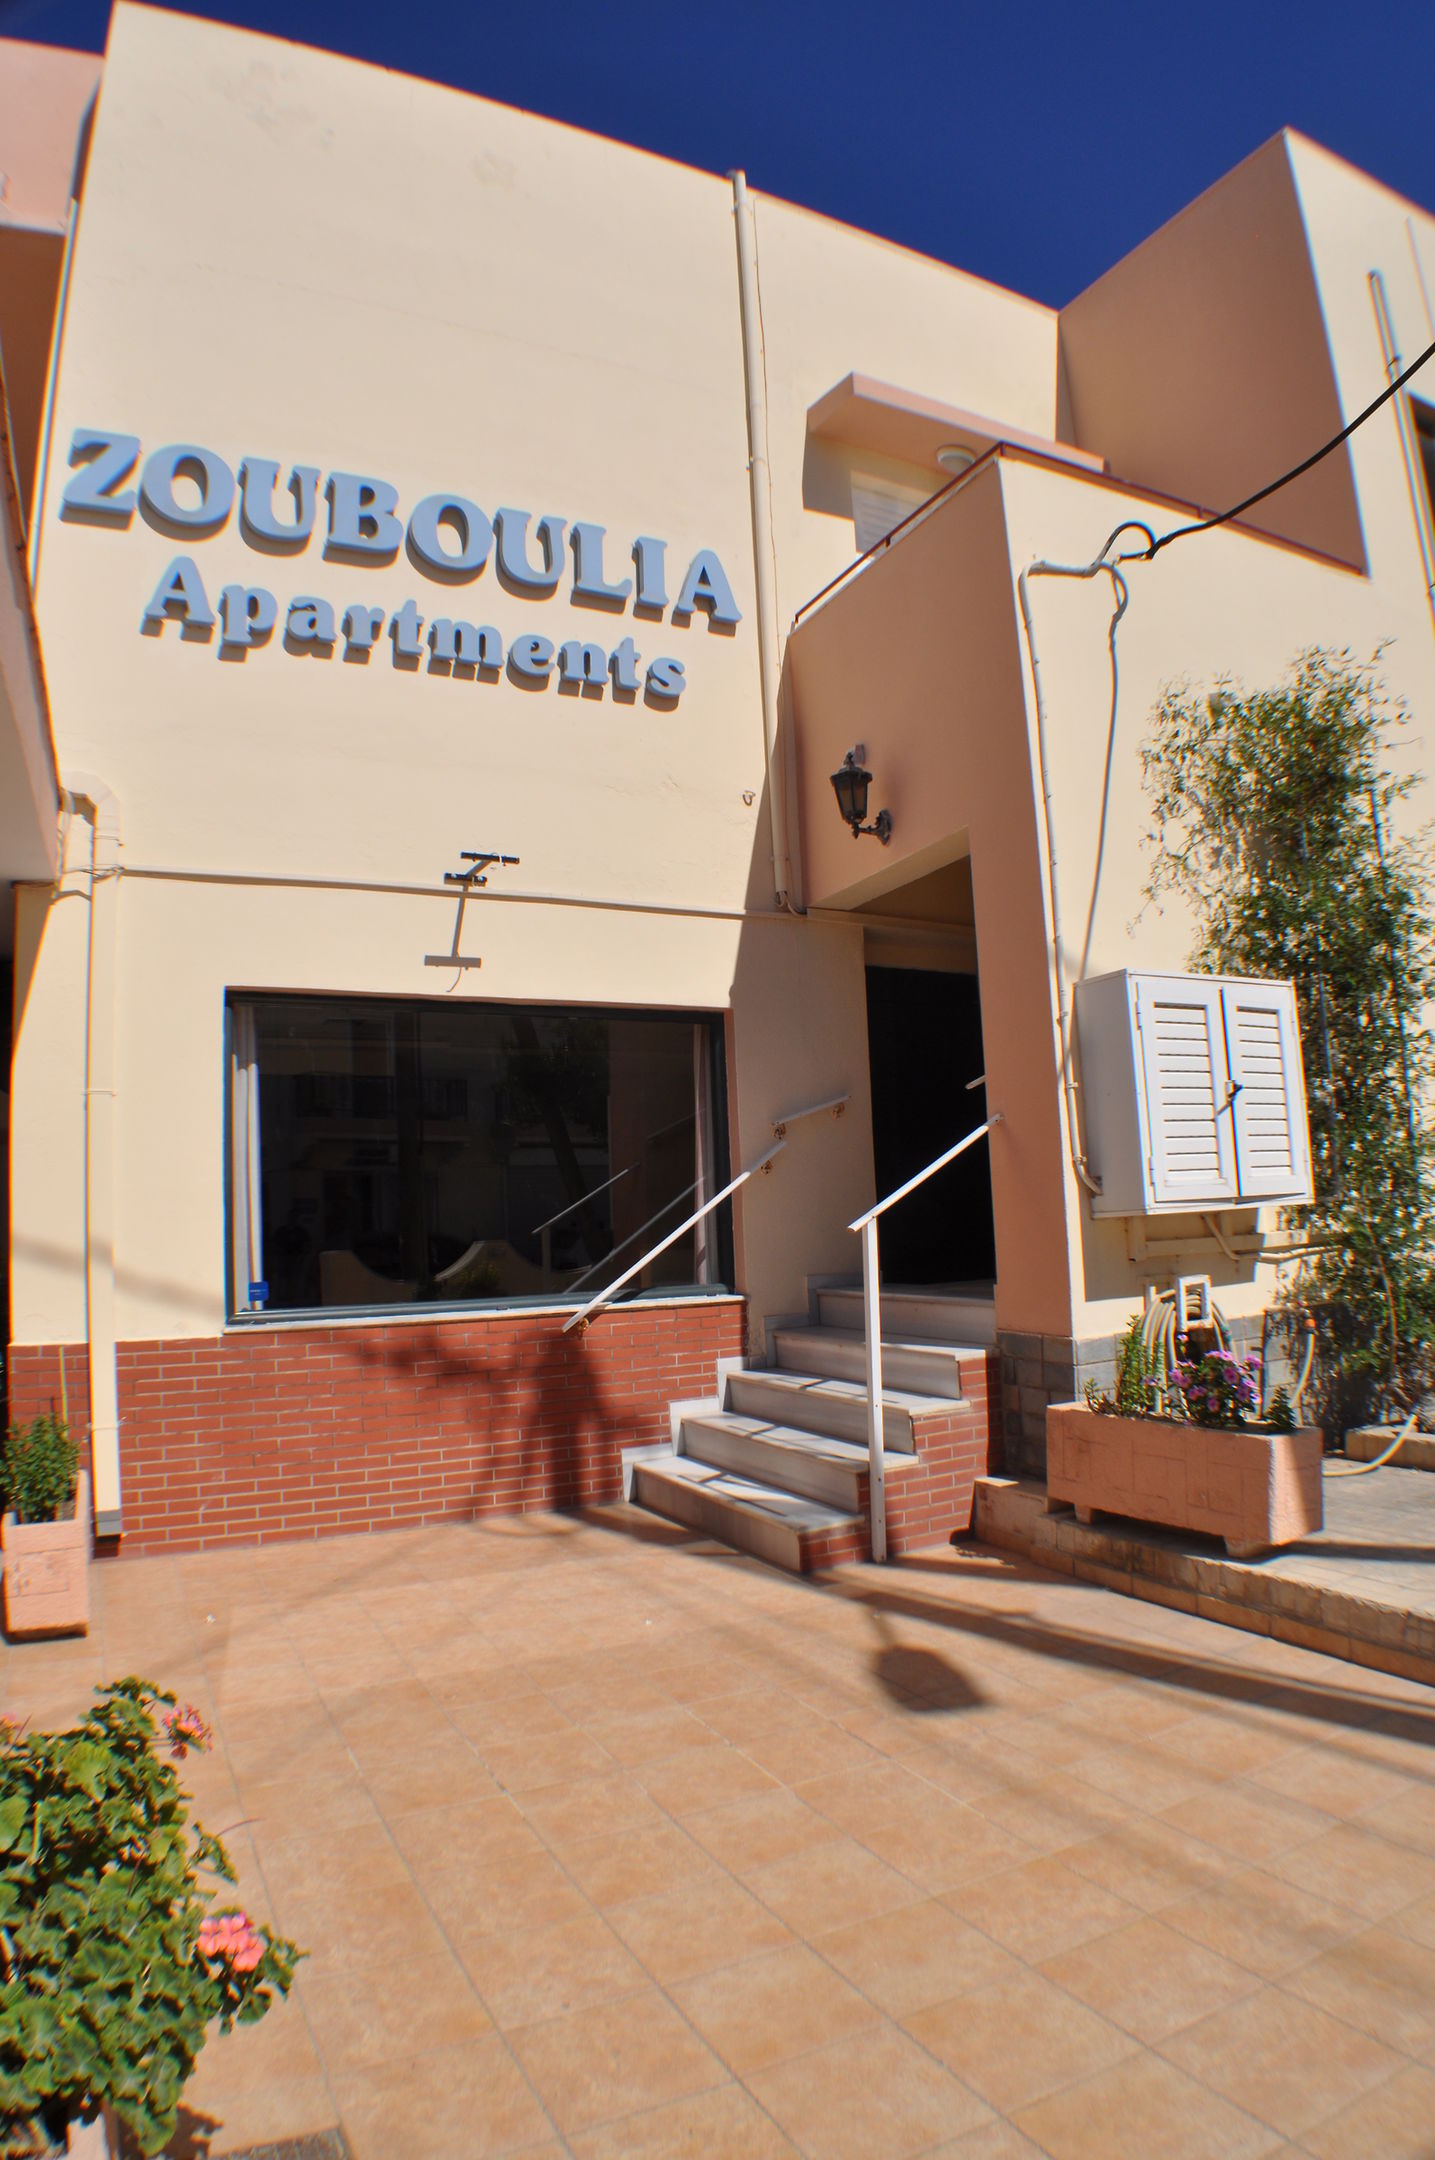 Zouboulia Apartments